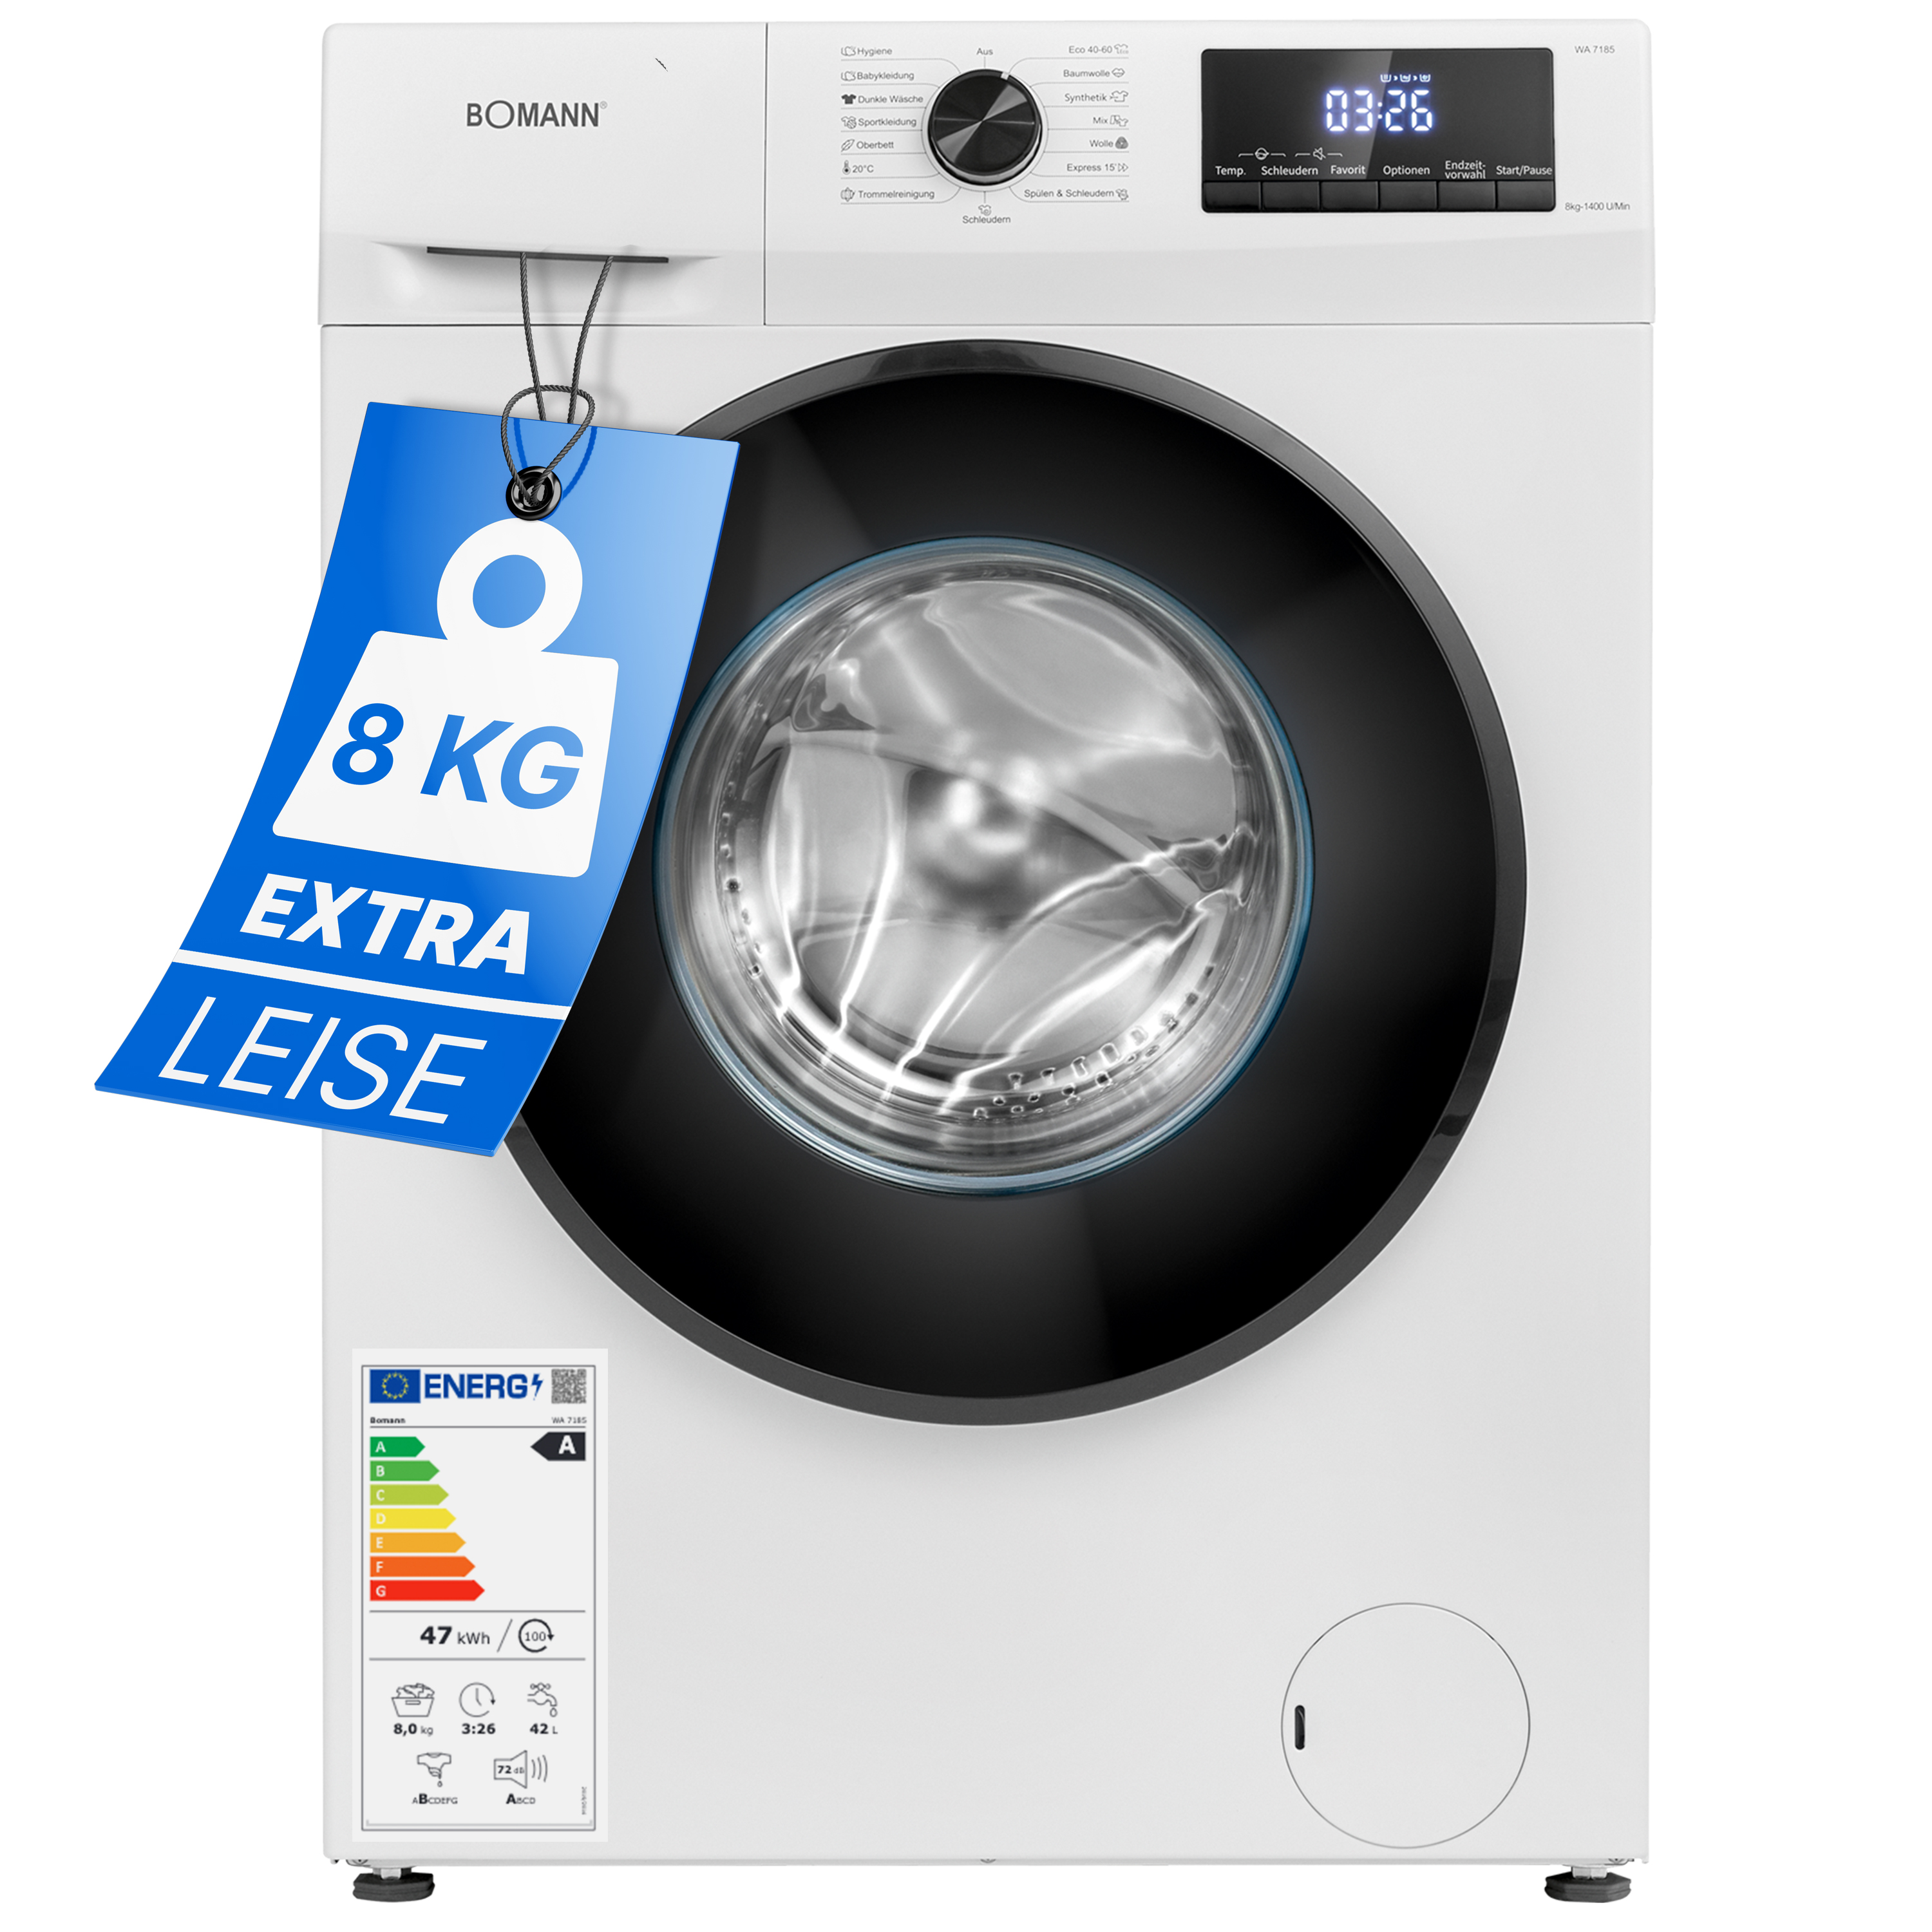 Waschmaschine max. 8kg Bomann® 1400 U/min mit